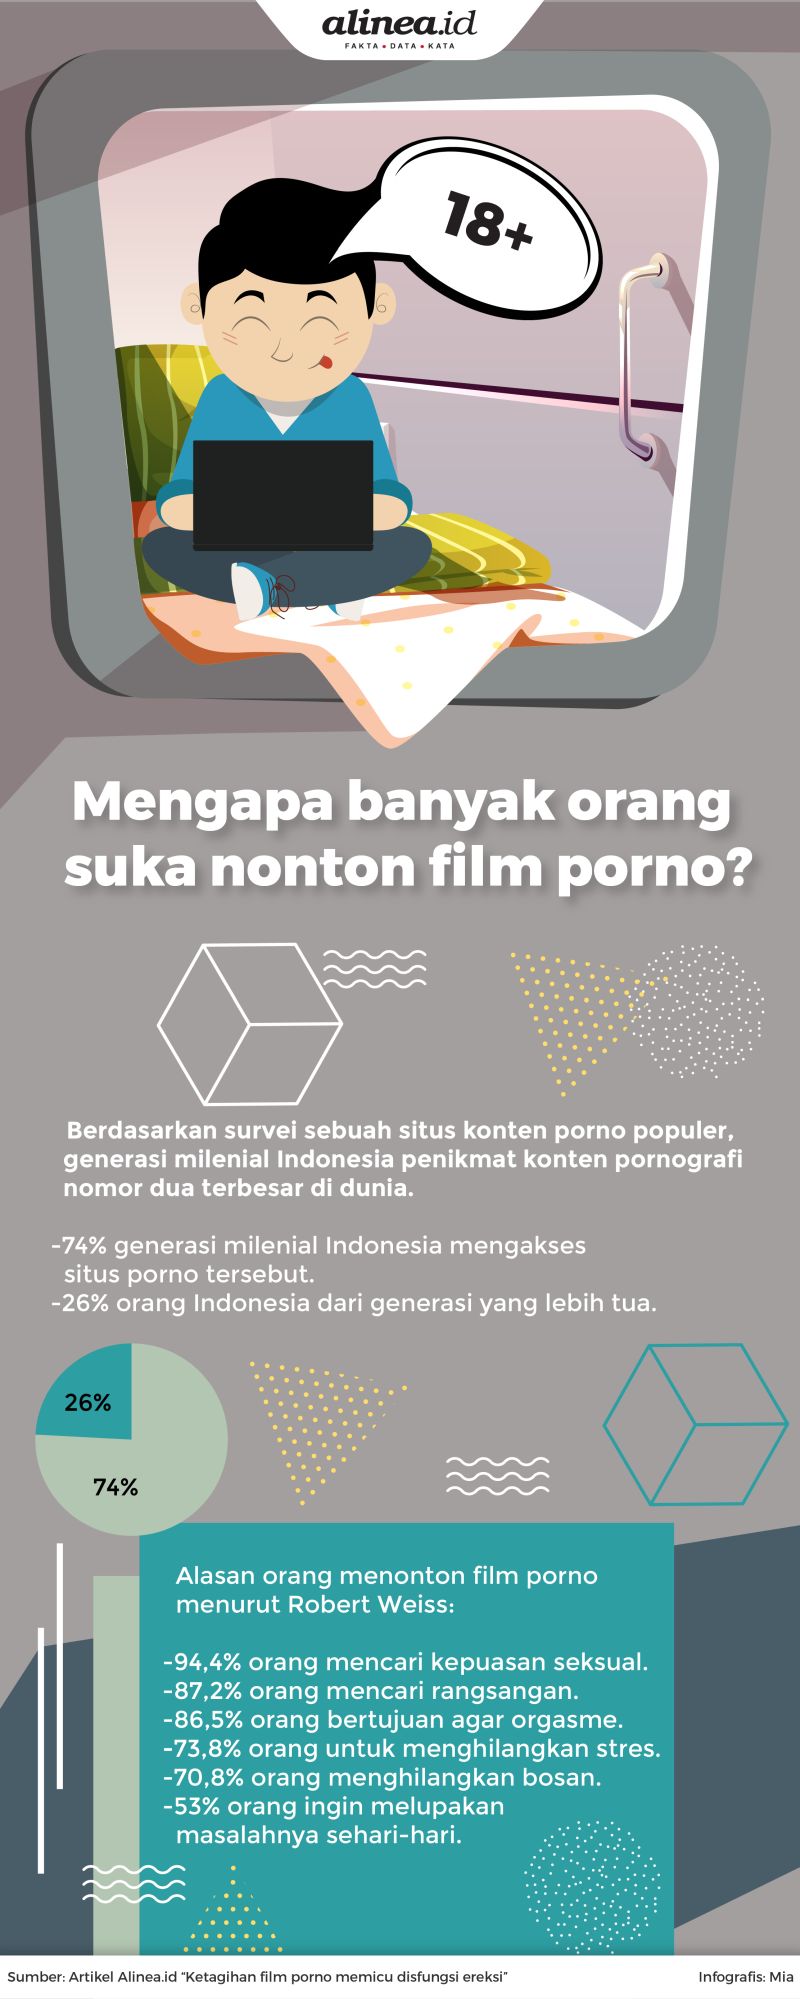 Generasi milenial Indonesia merupakan salah satu penikmat konten pornografi terbanyak di urutan kedua di dunia, setelah India.